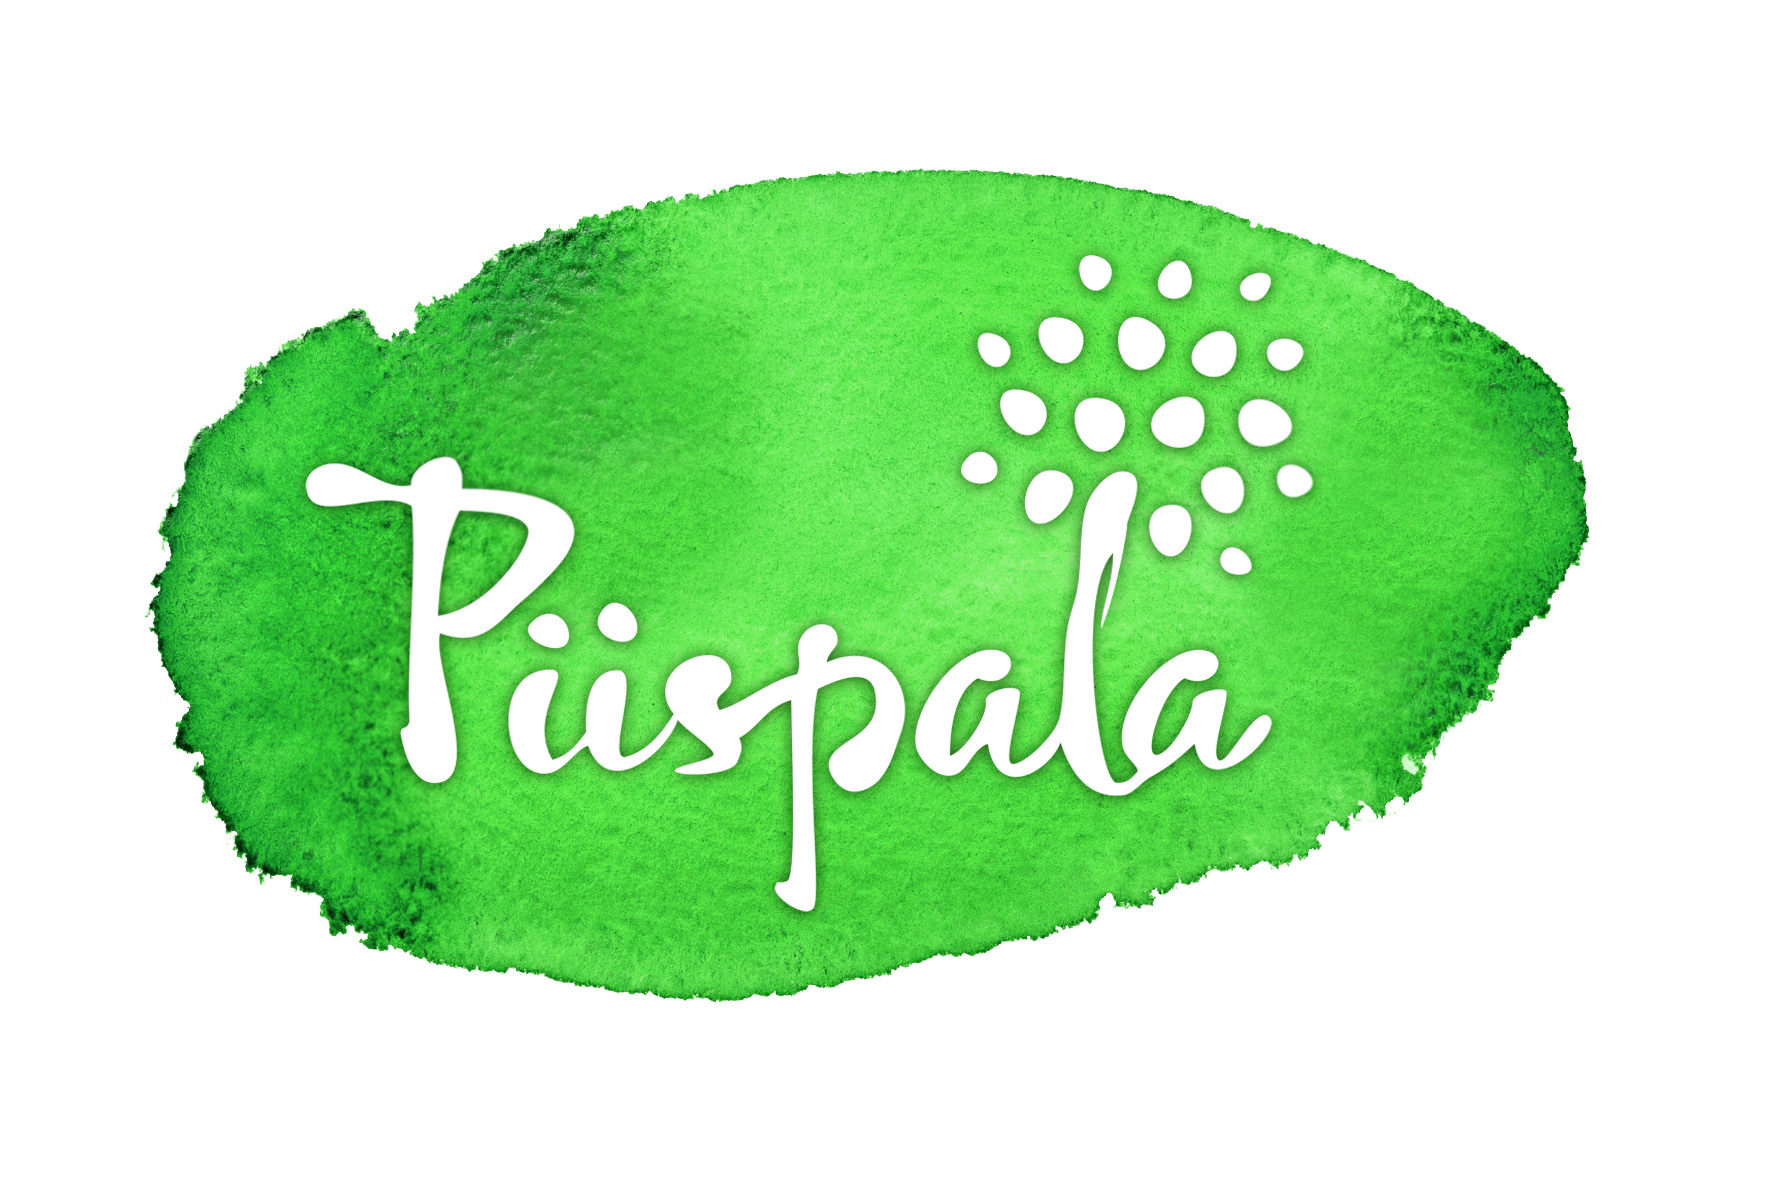 Piispala logo roiske vihr_large.jpg